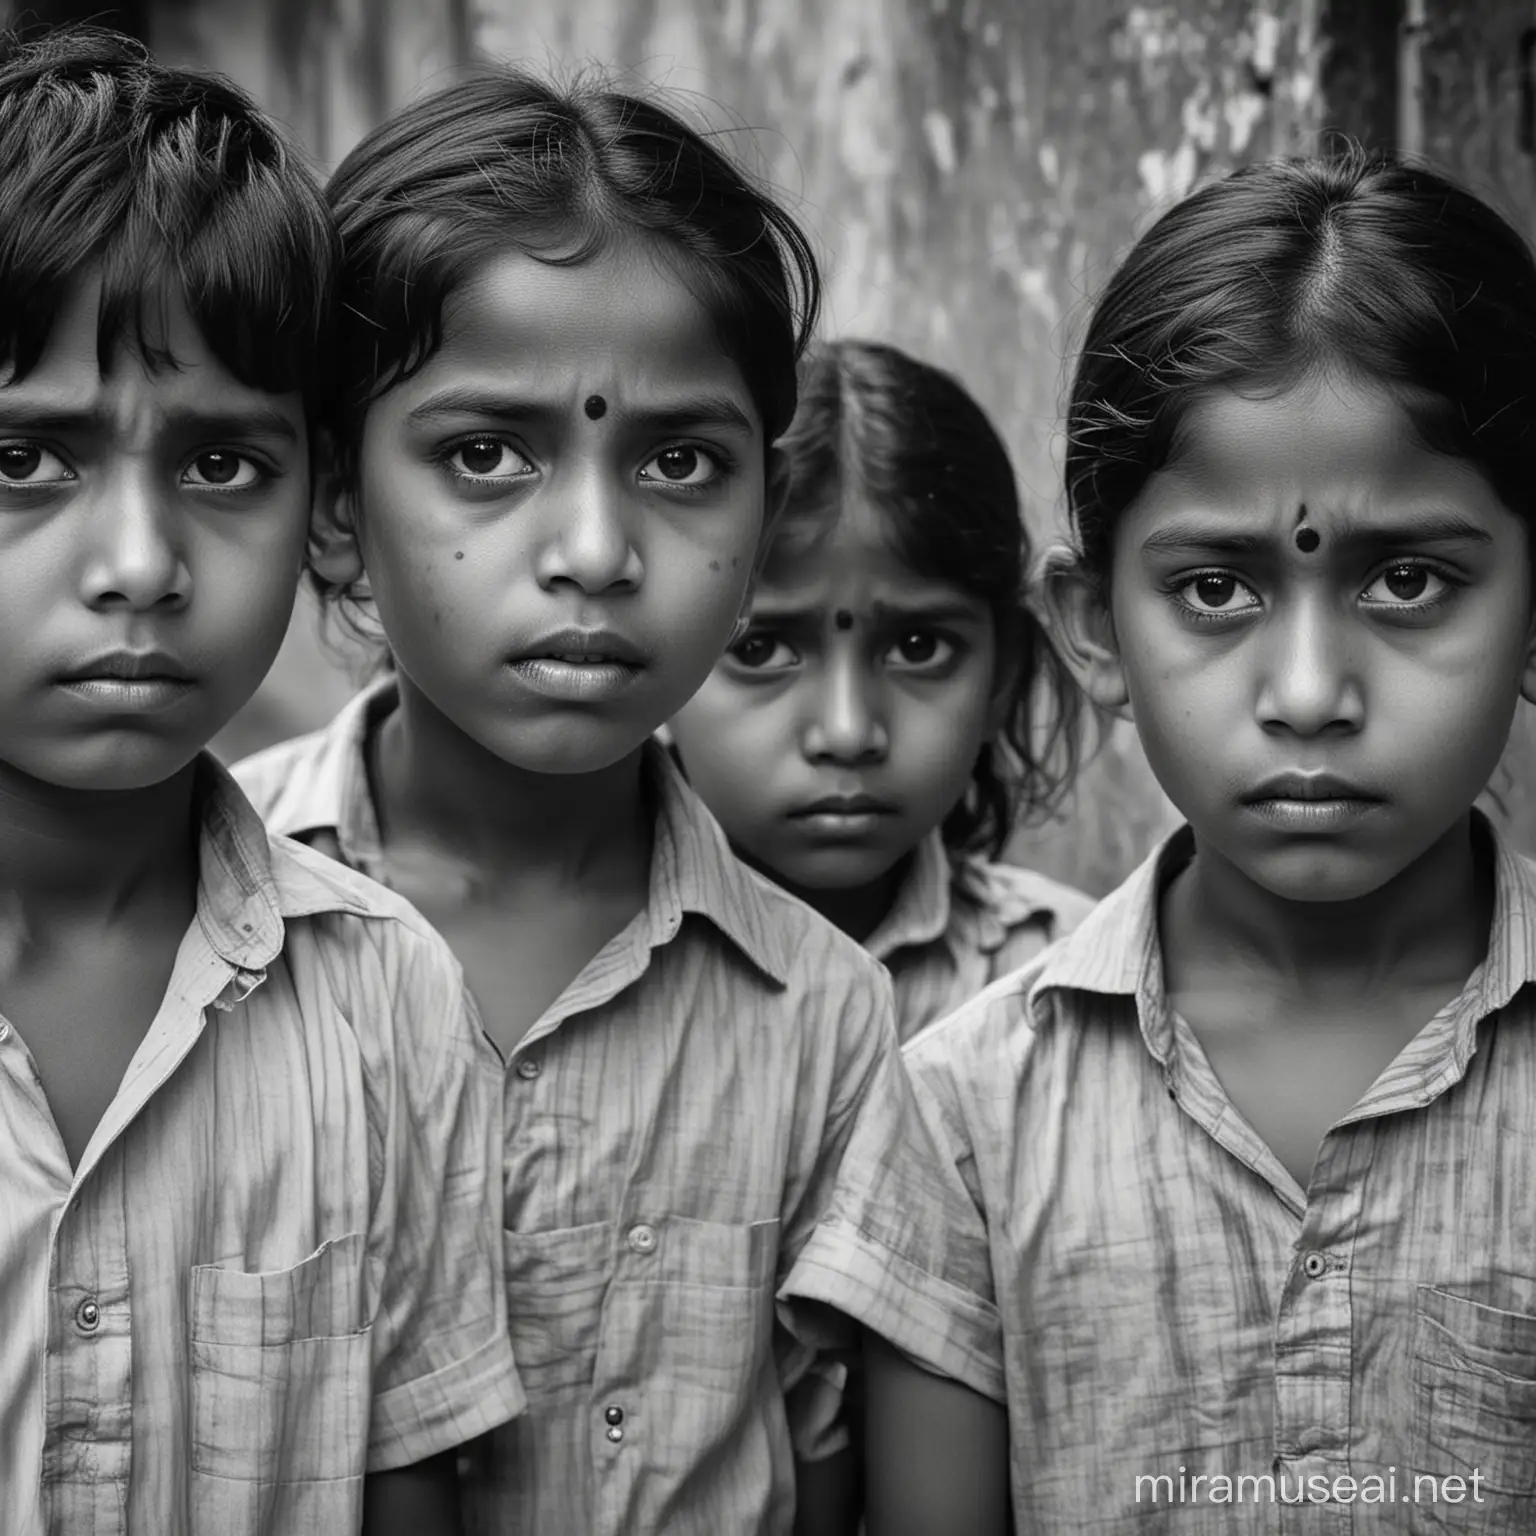 indiske børn i sort/hvid farver der ser triste ud